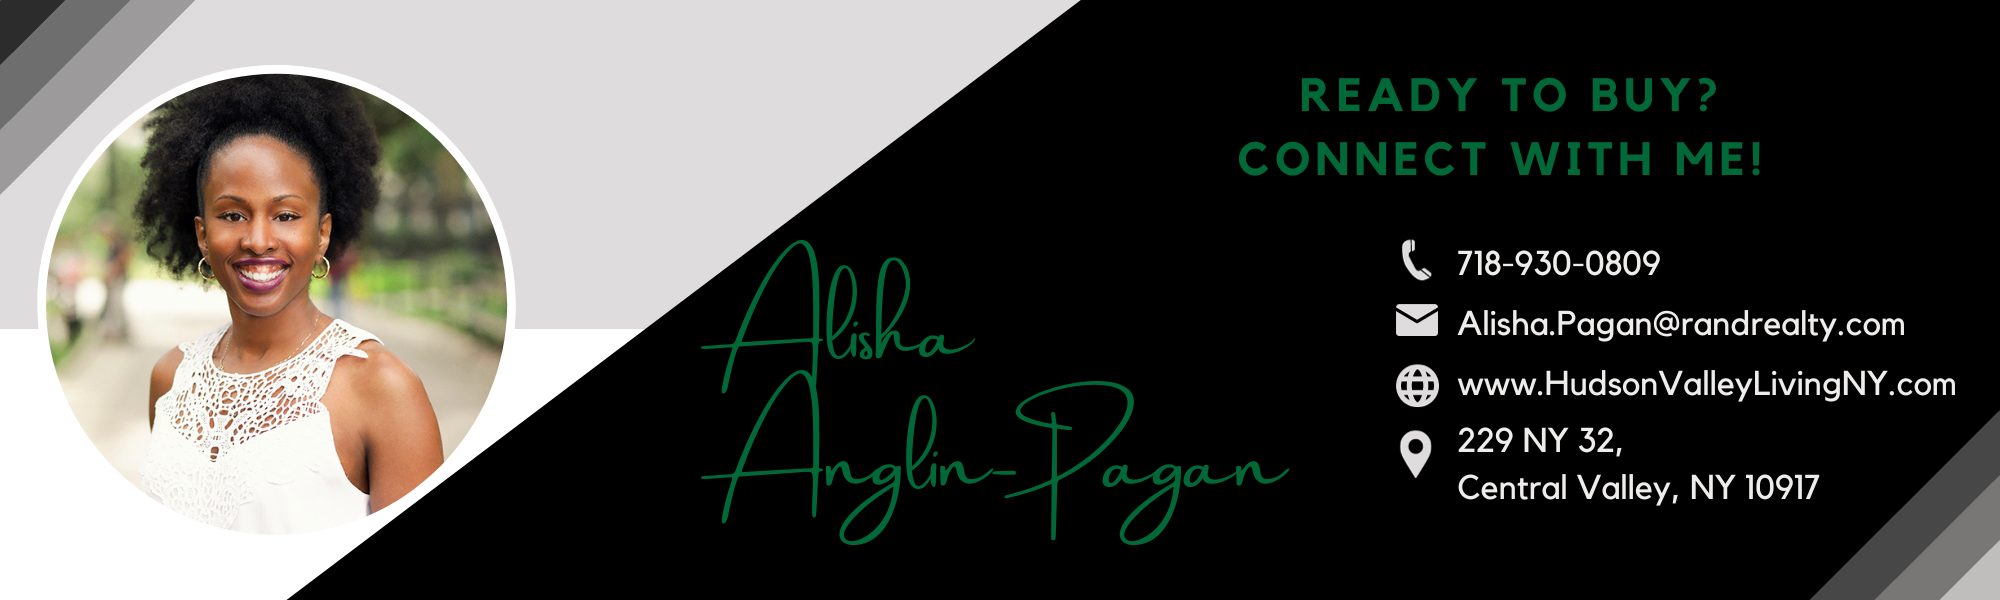 Contact Information for real estate agent Alisha Anglin-Pagan, Howard Hanna Rand Realty